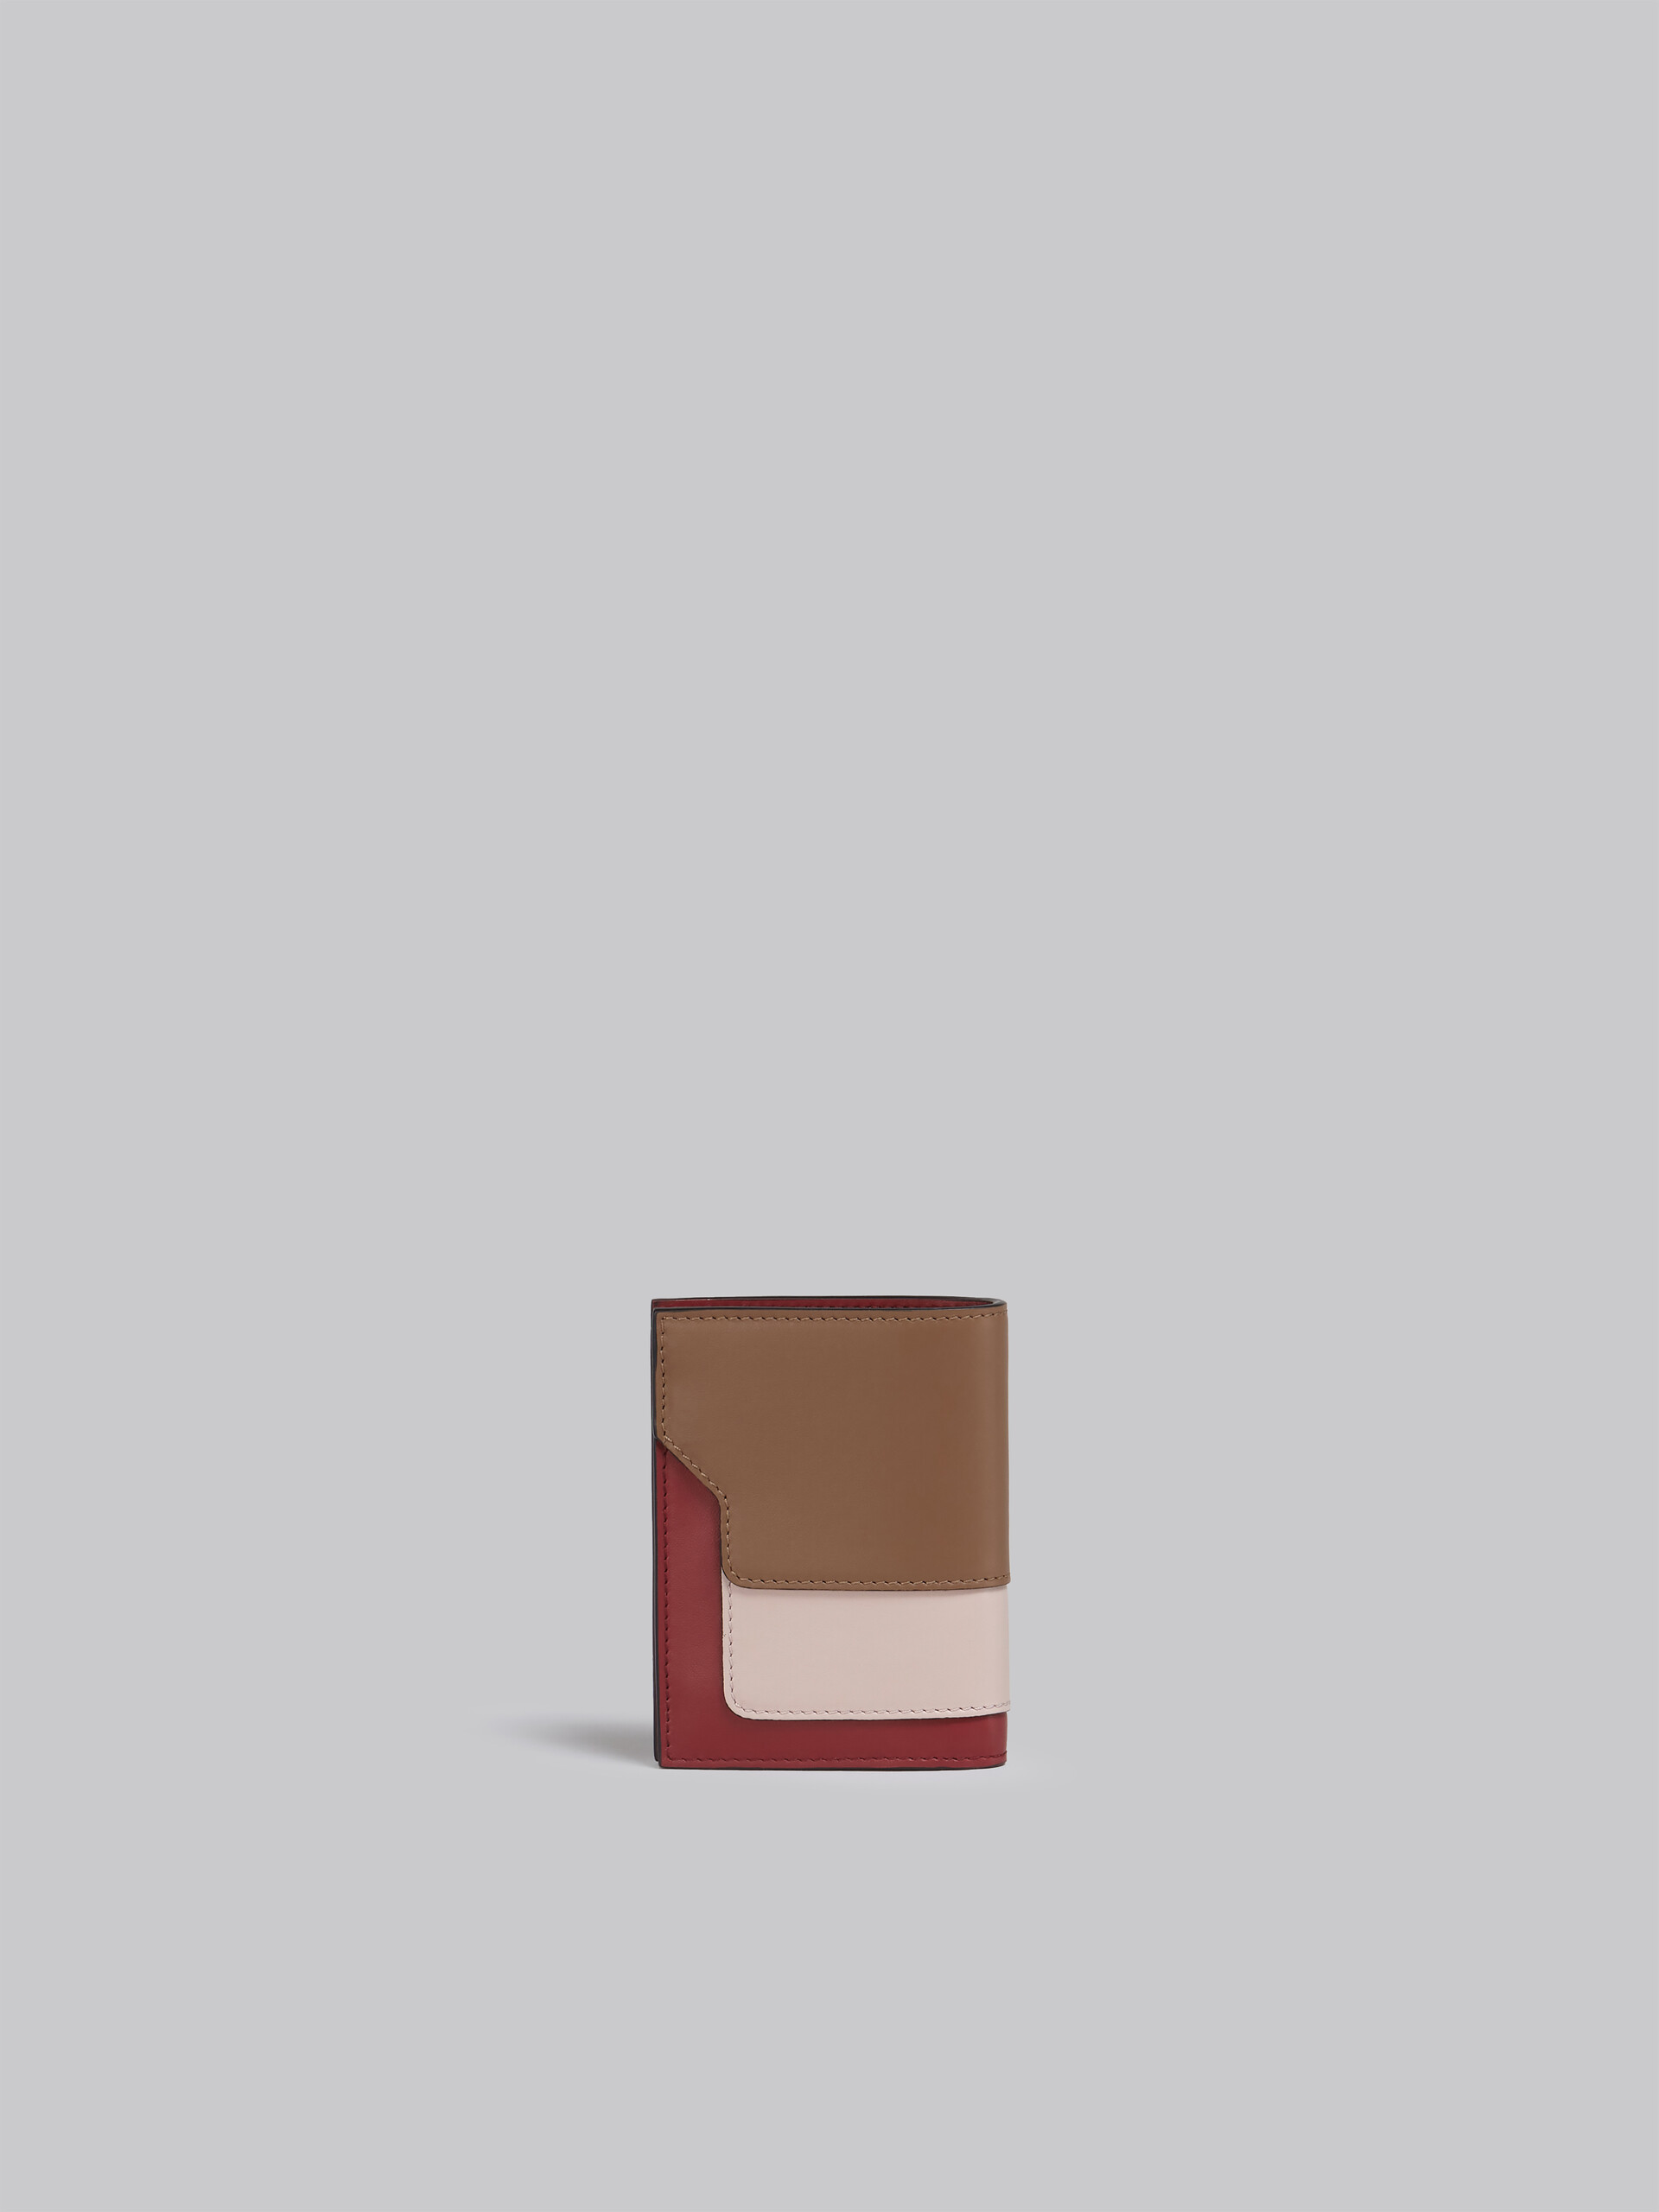 Faltbrieftasche aus braun-pinkem und burgunderrotem Saffianleder - Brieftaschen - Image 3